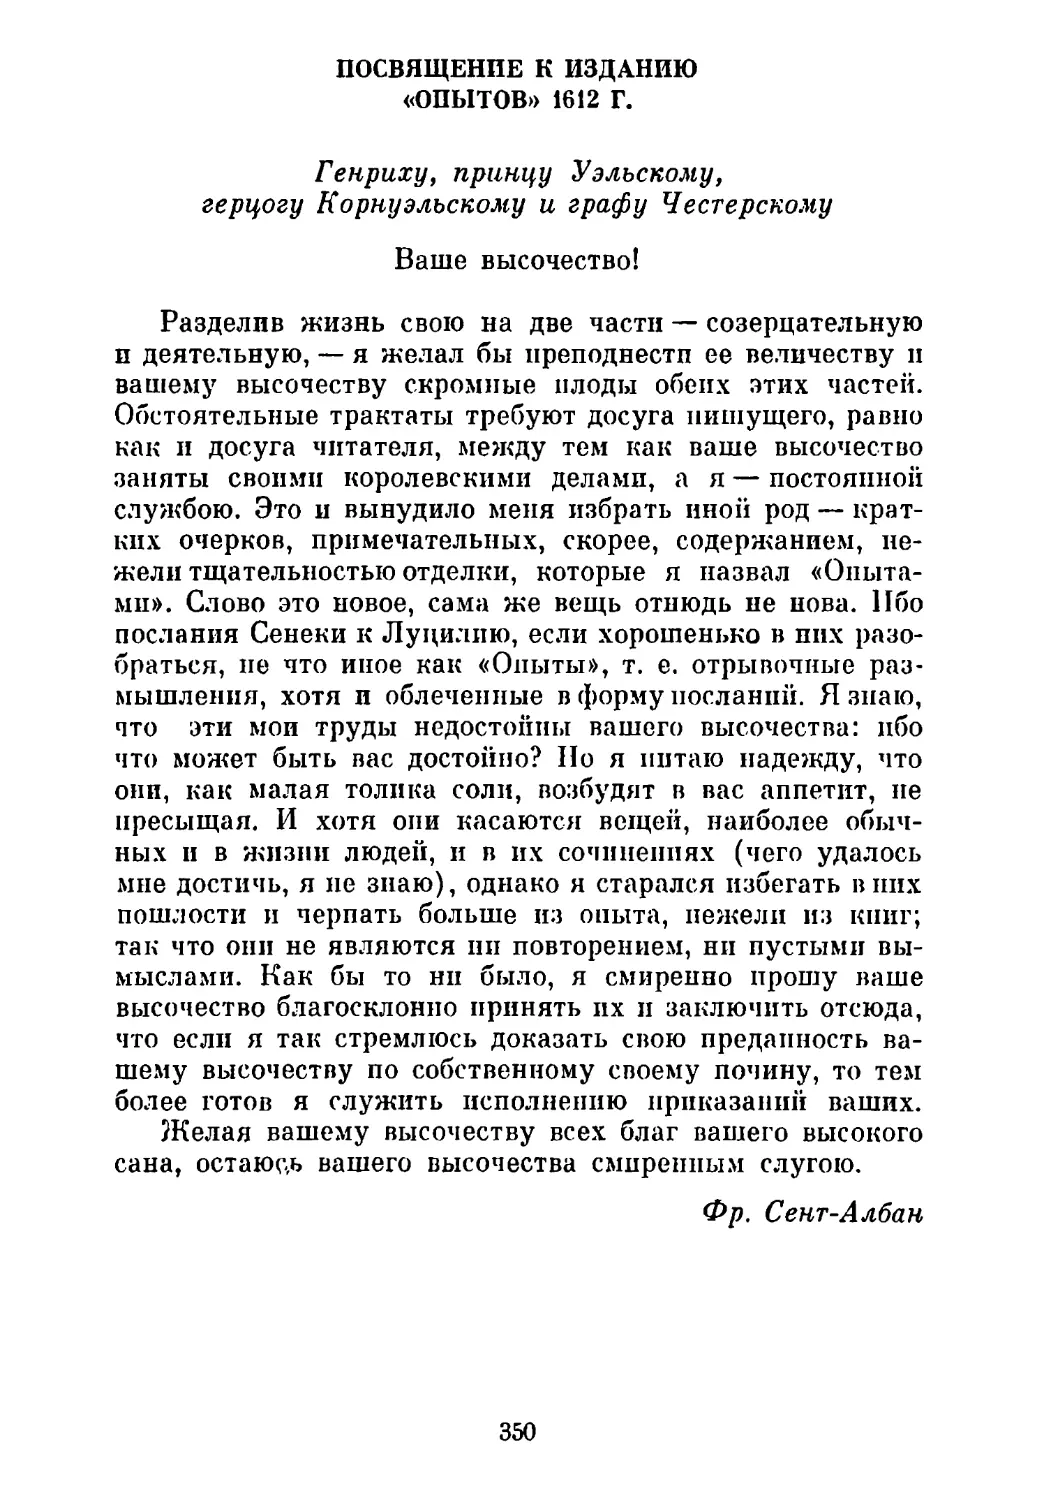 Посвящение к изданию «Опытов» 1612 г.